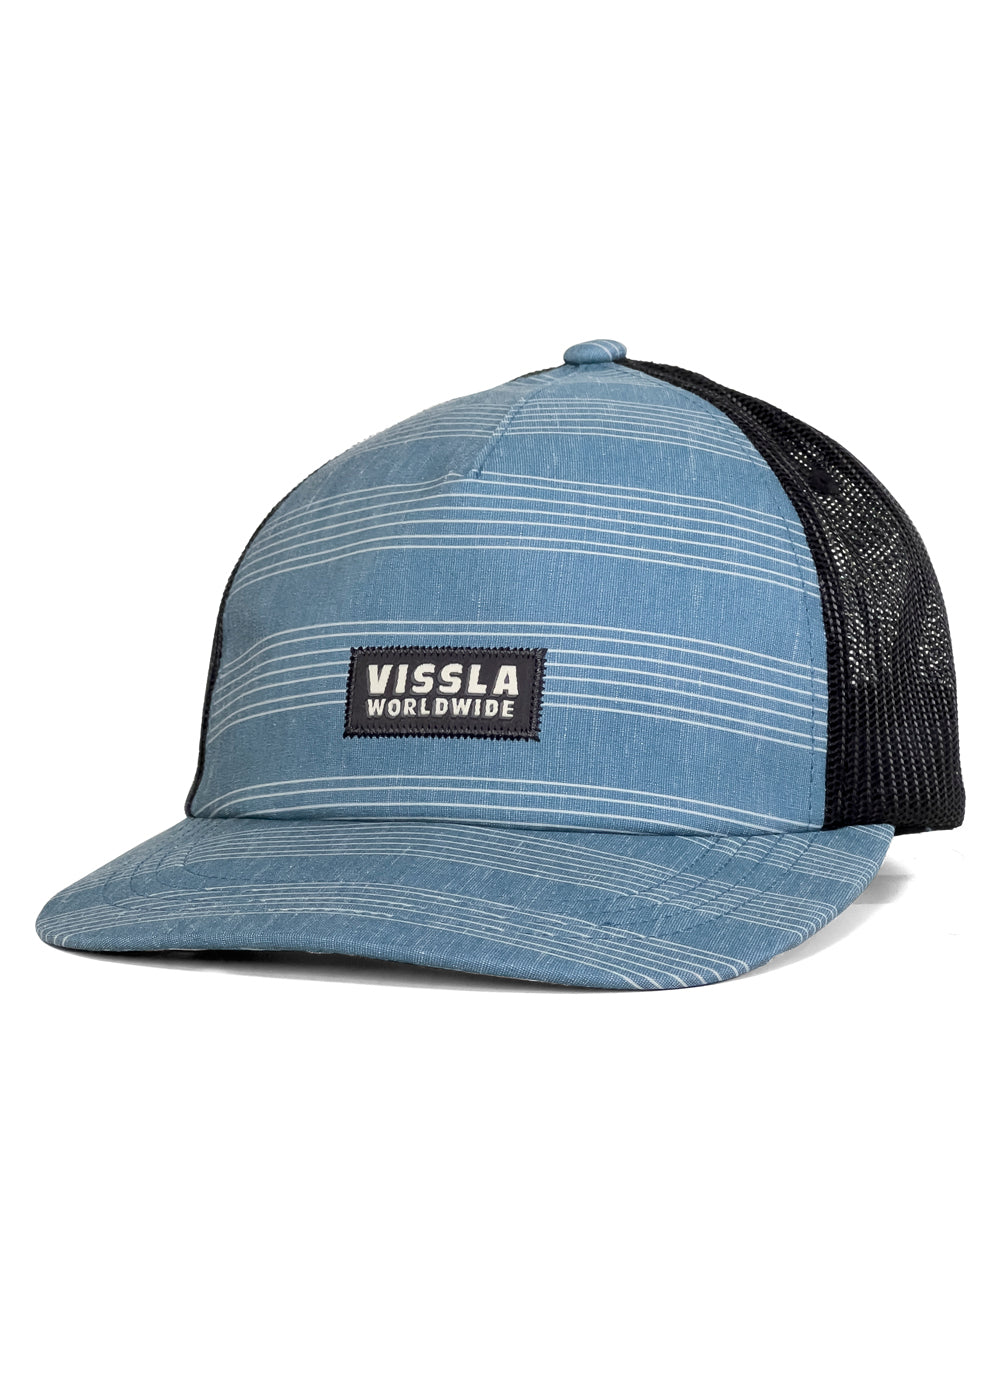 Vissla Lay Day Eco Trucker II Hat- blue stripe